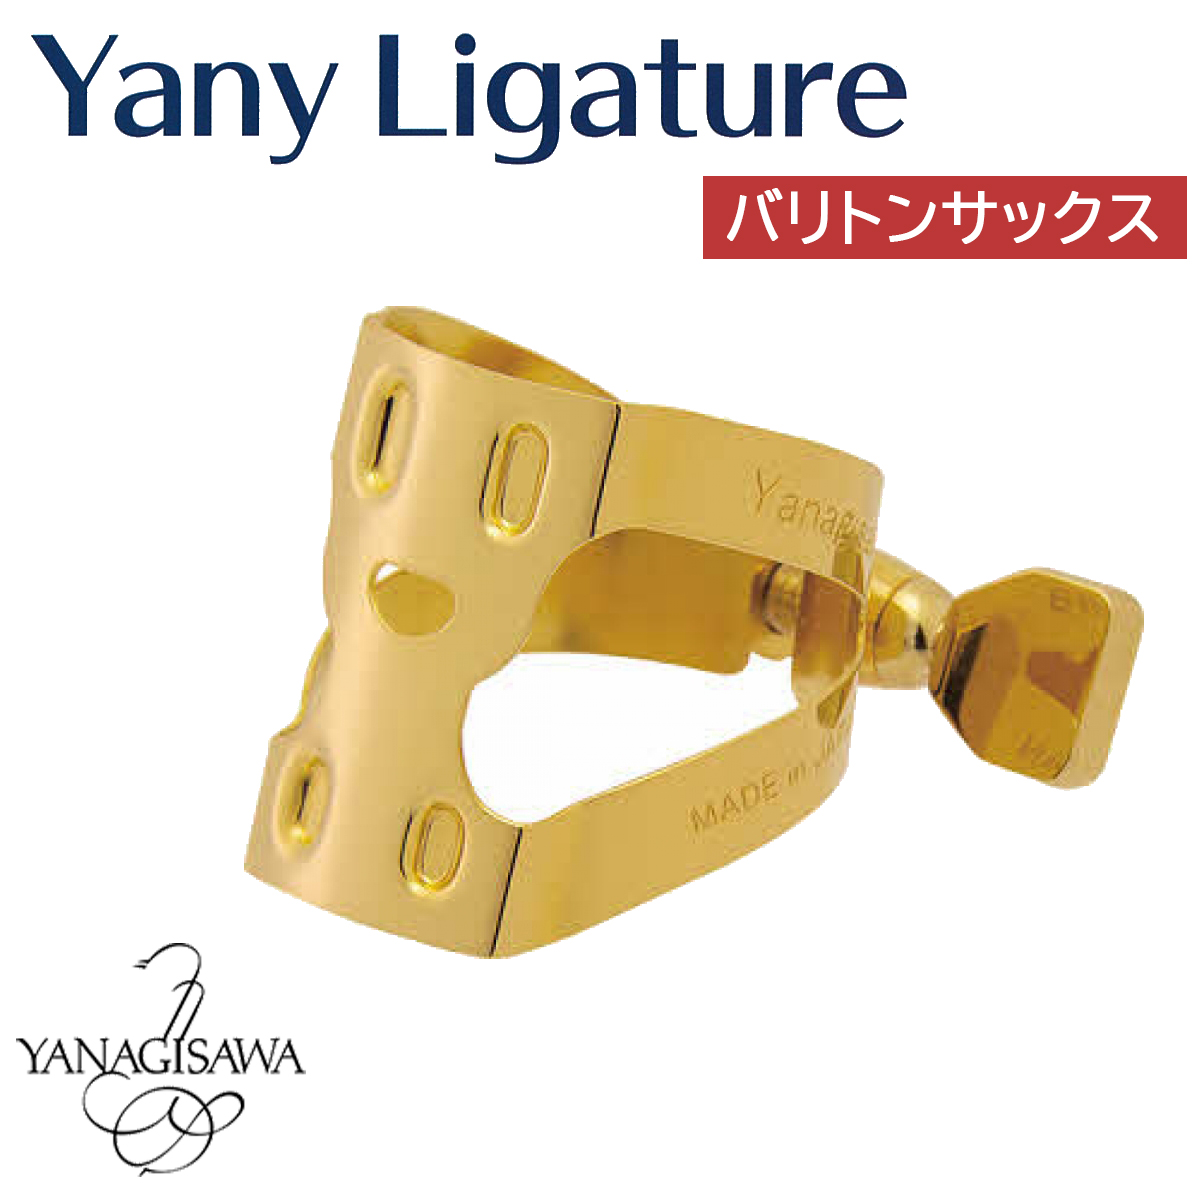 YANAGISAWA Yany Ligature バリトンサックス用 ヤニー・ニコちゃん 【ヤナギサワ ヤニー・リガチャー】